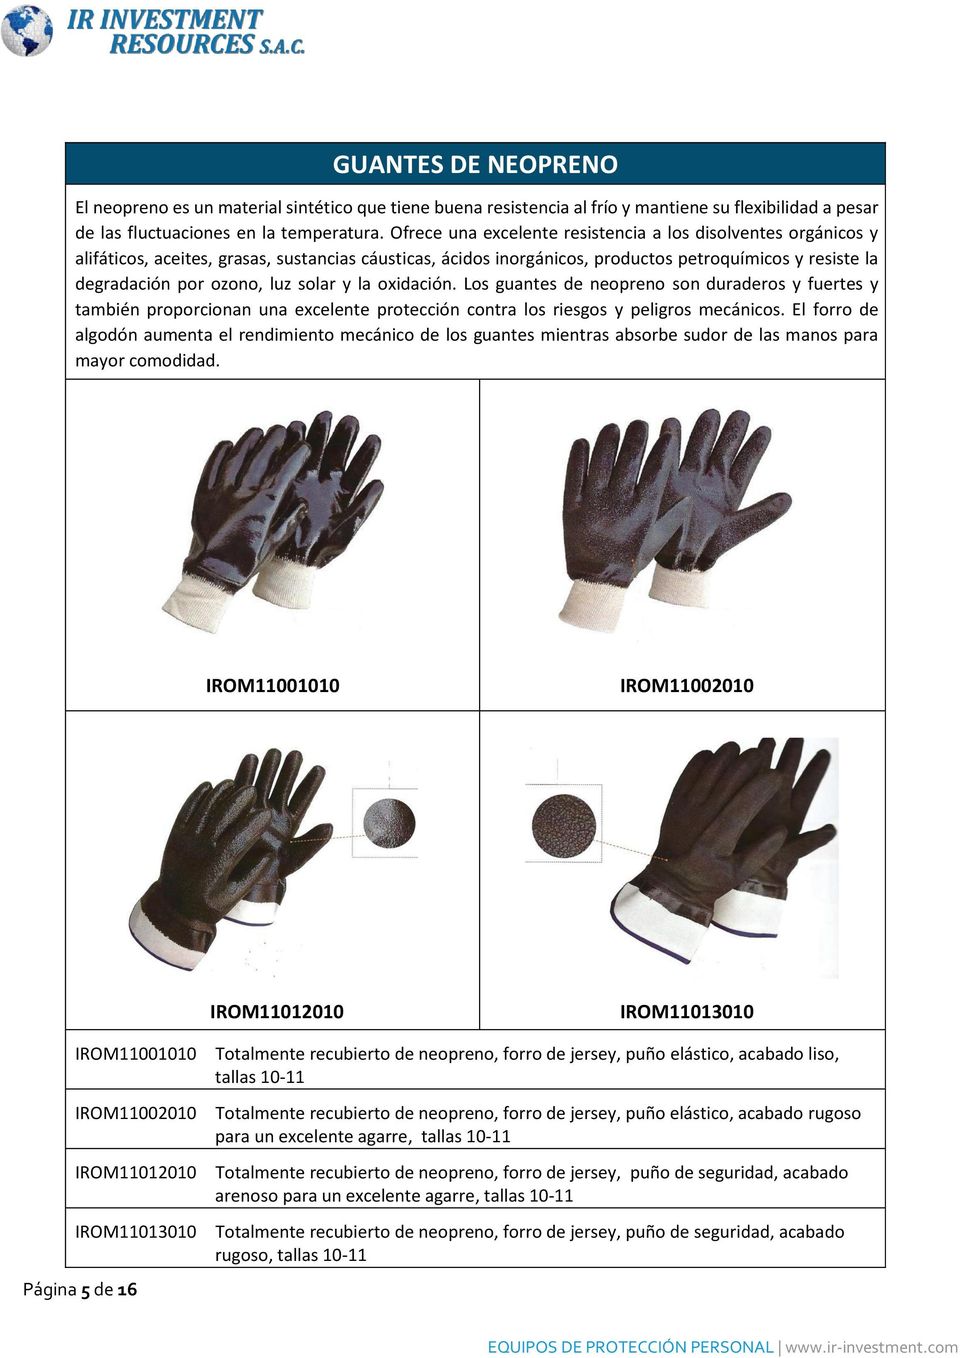 solar y la oxidación. Los guantes de neopreno son duraderos y fuertes y también proporcionan una excelente protección contra los riesgos y peligros mecánicos.